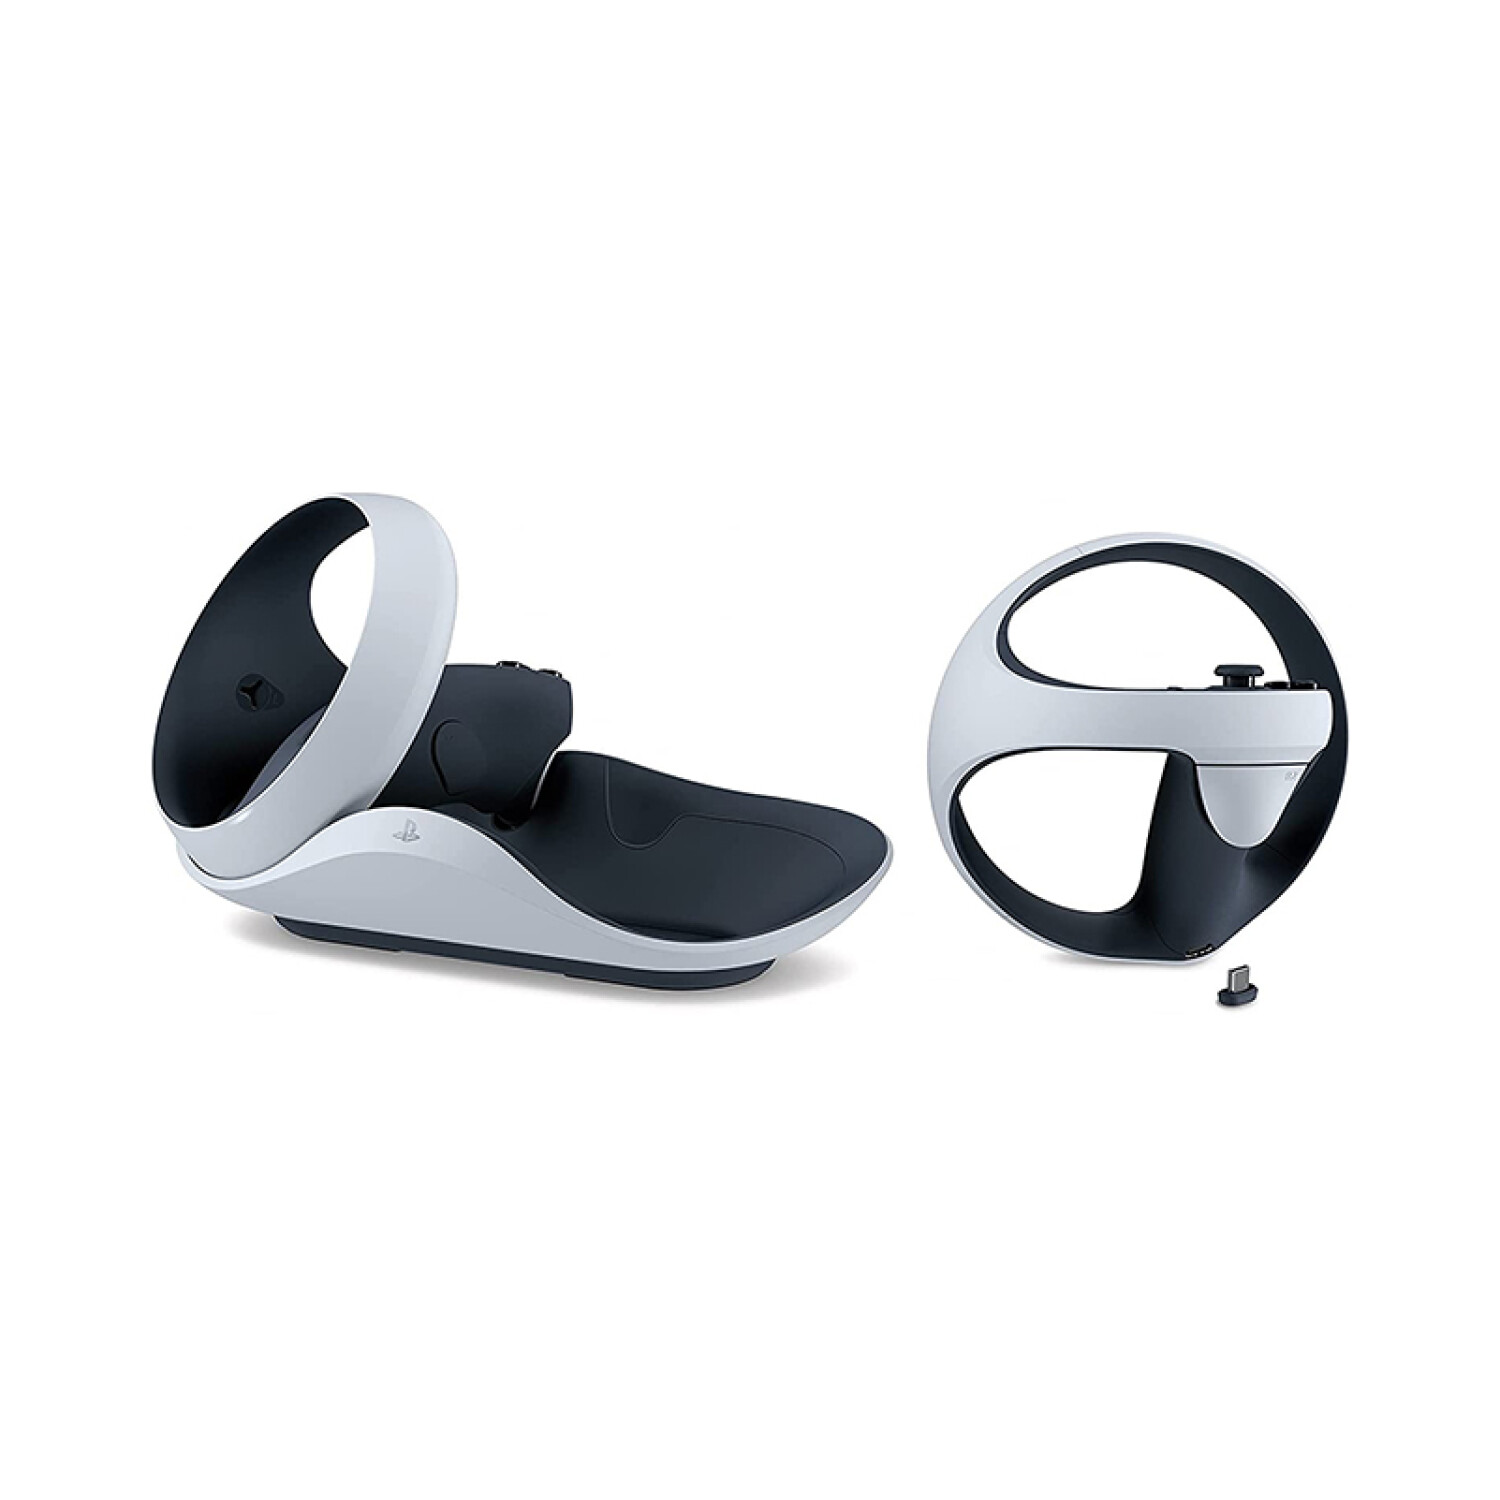 Gafas de realidad virtual sony ps5 playstation vr2